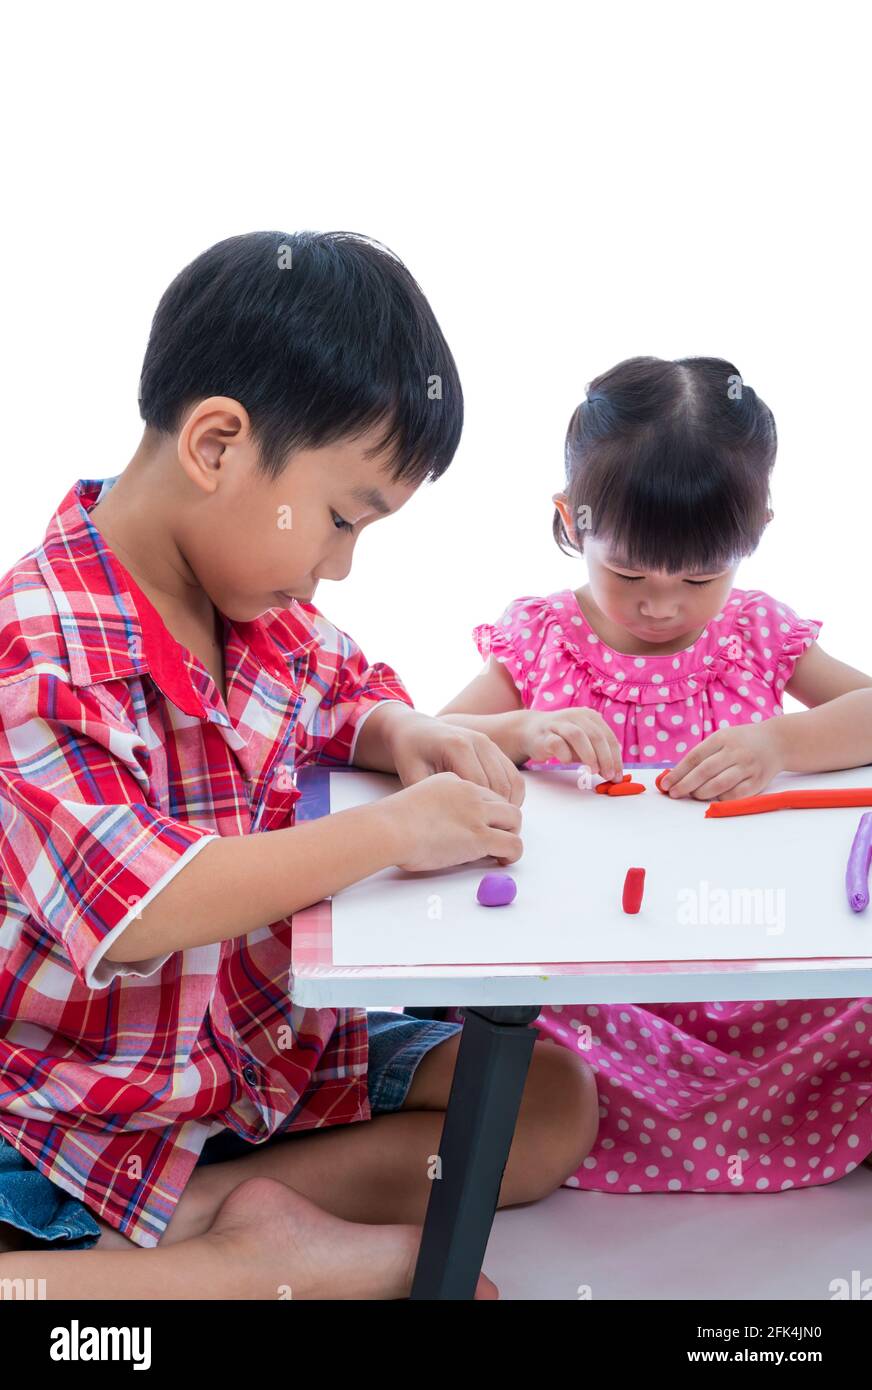 Kleine asiatische Kinder spielen und erstellen Spielzeug aus Spielteig auf dem Tisch, auf weißem Hintergrund. Stärken Sie die Phantasie des Kindes Stockfoto